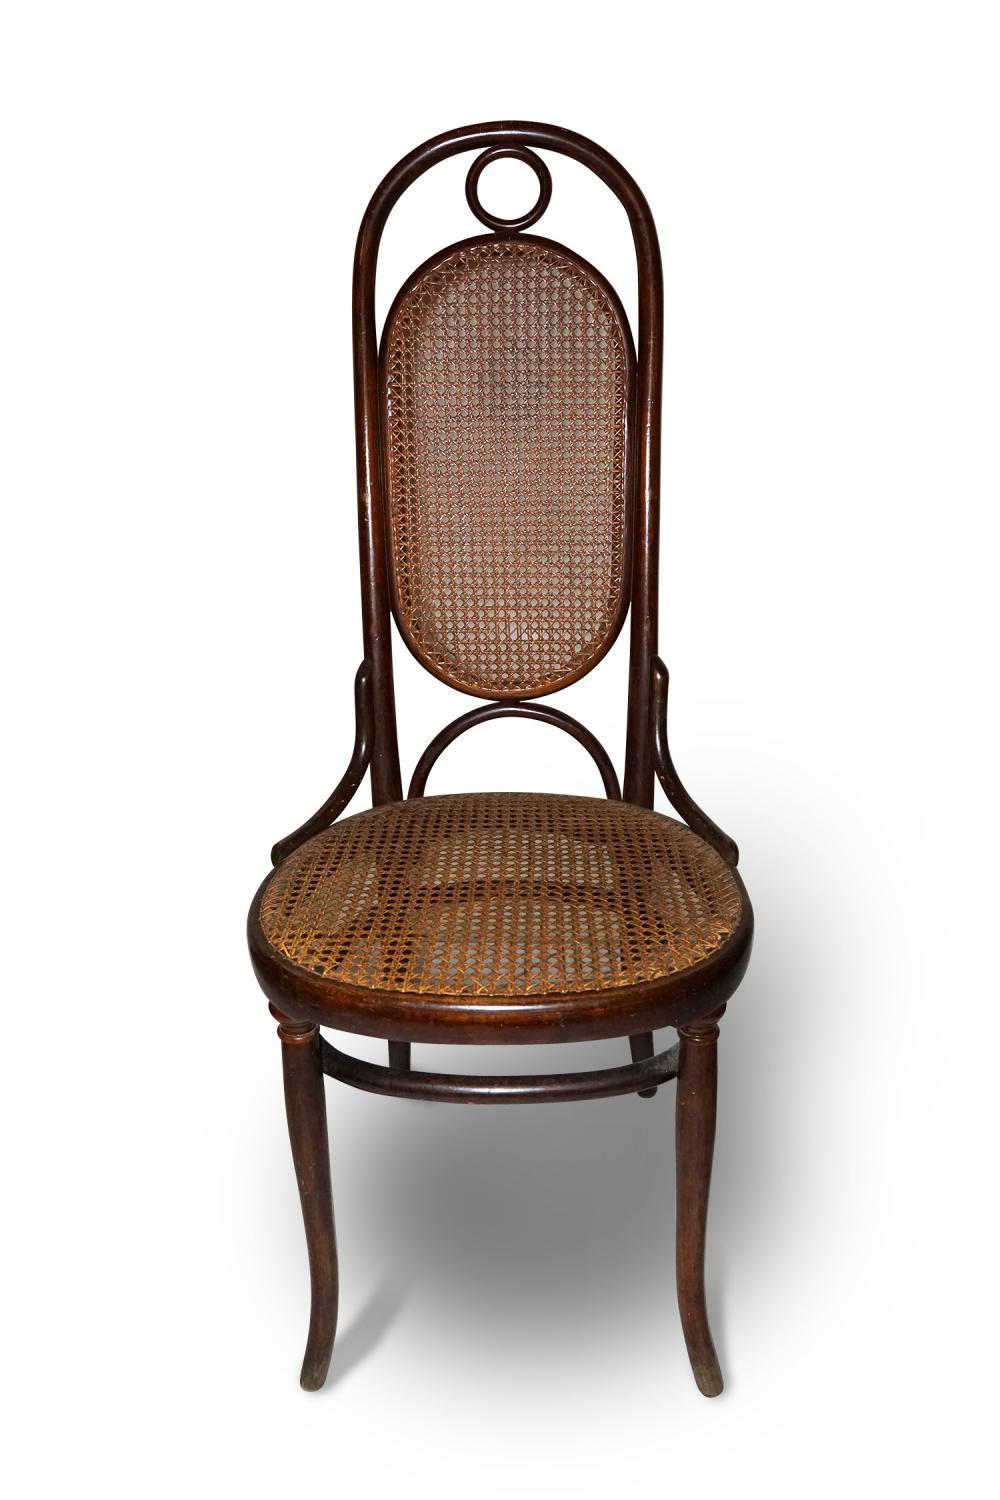 Description
4 chaises Tonet 4 chaises Tonet originales, estampillées et en parfait état. 20ème siècle. Dimensions : 116 x 46 x 46cm. Bon état - utilisé avec de petits signes de vieillissement et des imperfections. Des photos et des informations